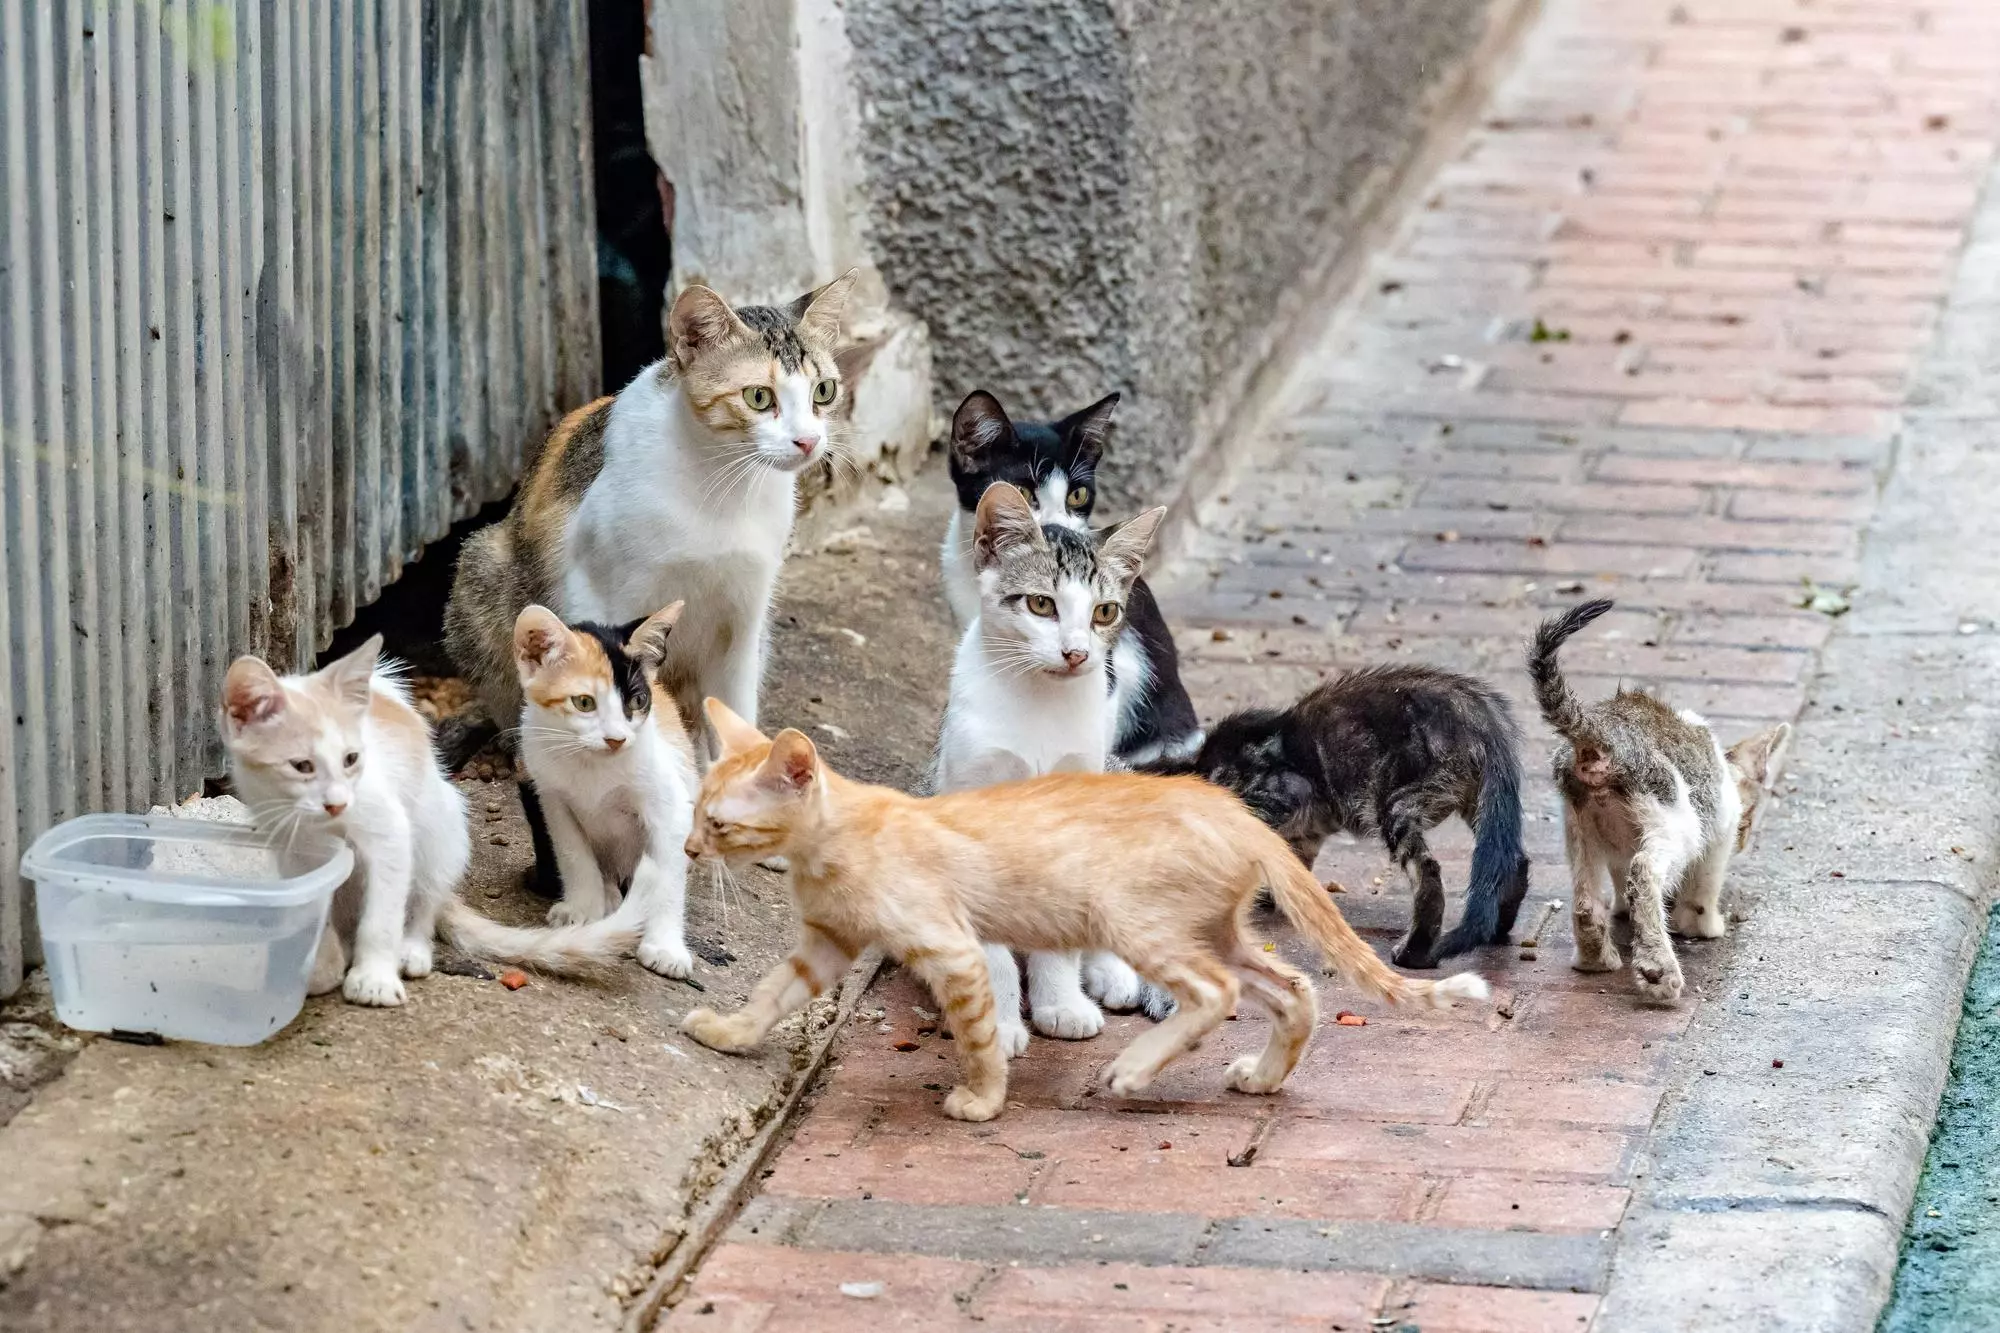 Ademal denuncia "envenenamiento masivo" de gatos en Lanzarote